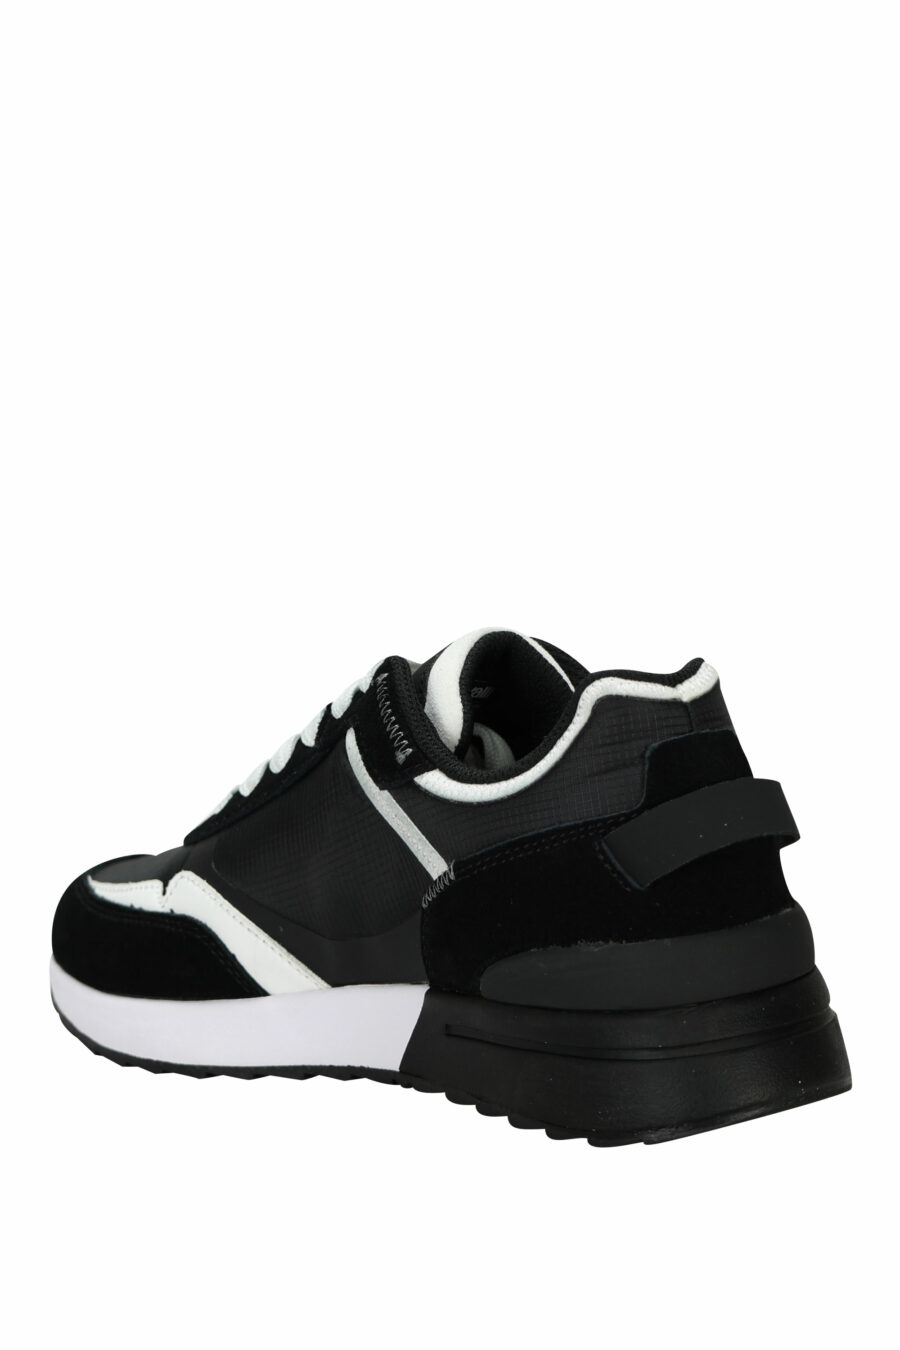 Zapatillas negras con blanco y minilogo circular "c" blanco - 8052672738479 3